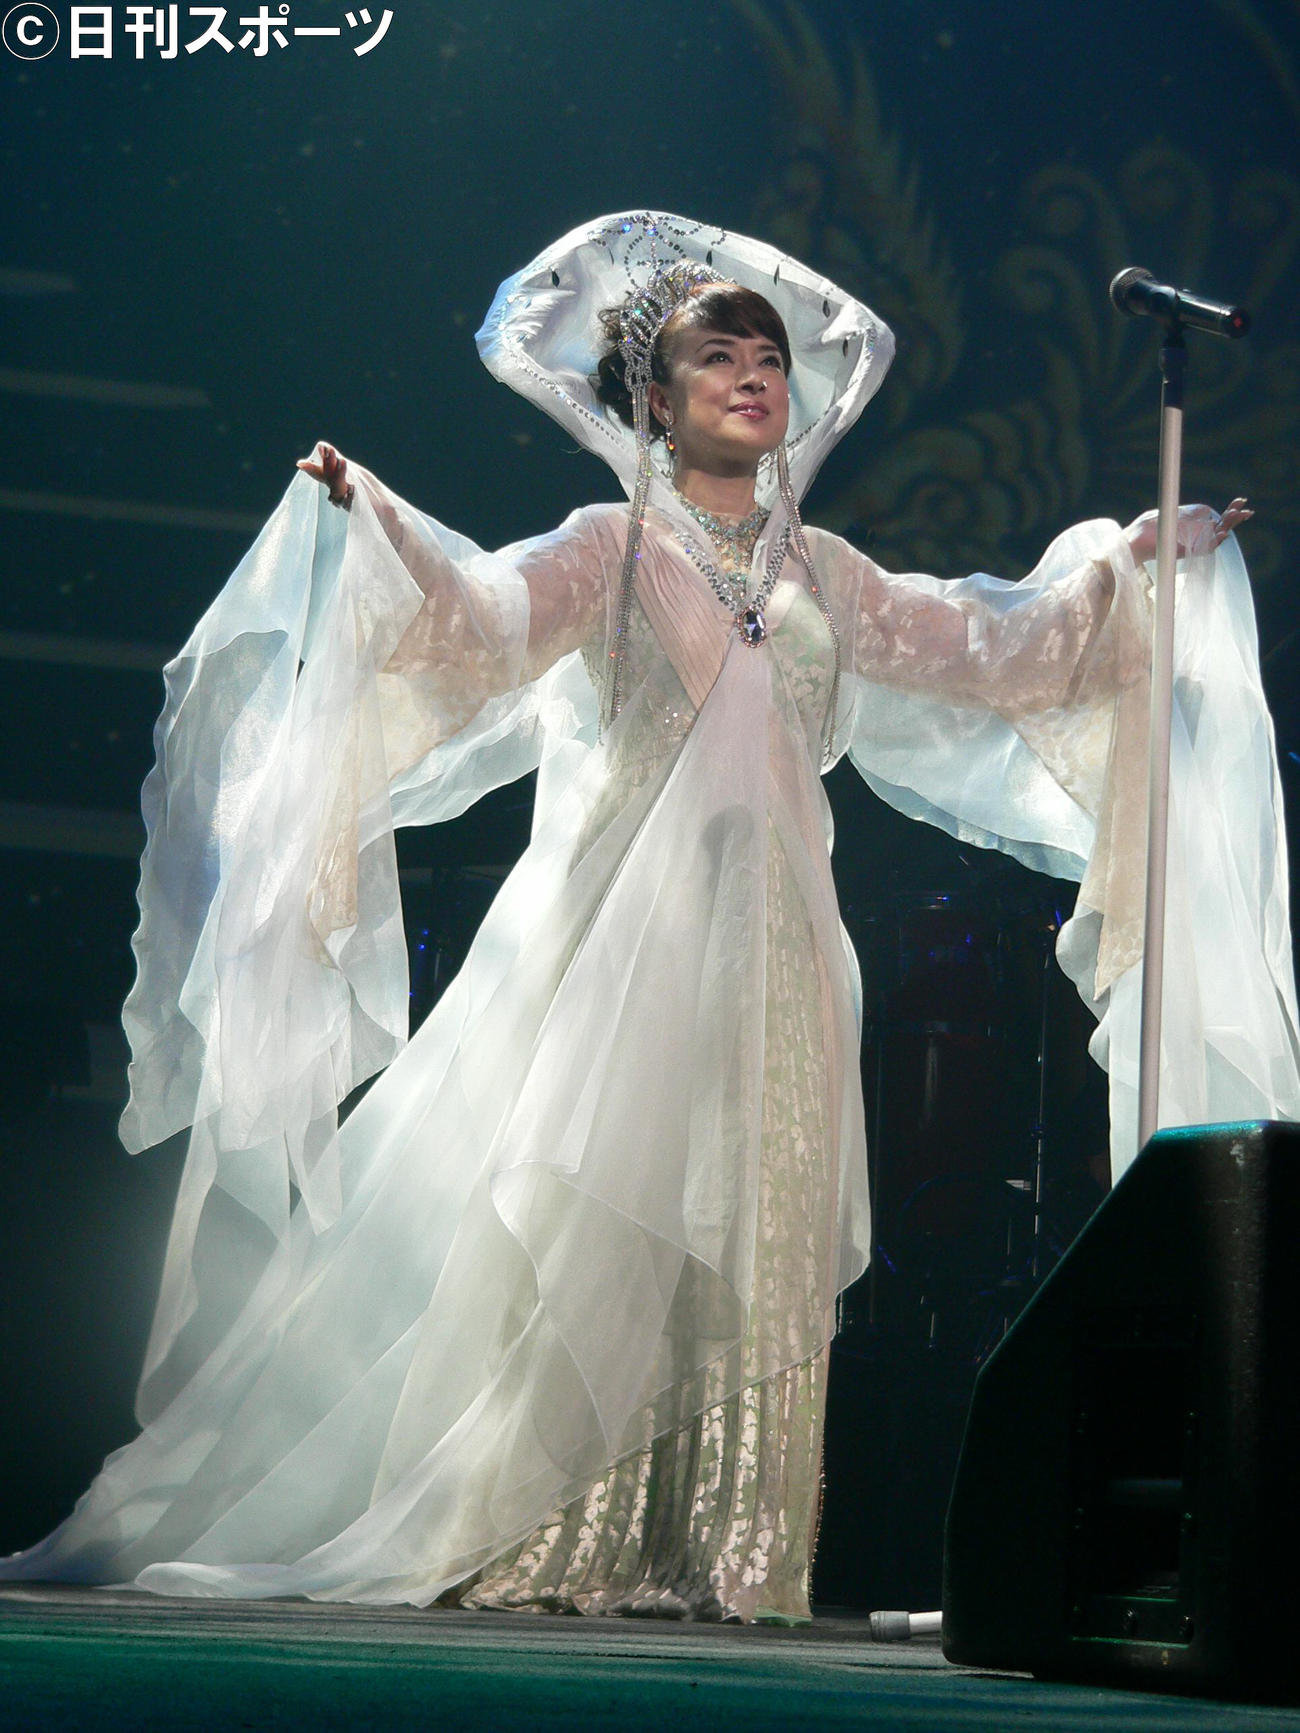 05年5月18日、ヒット曲「魅せられて」発売25周年記念コンサートで「魅せられて2004」を披露したジュディ・オング